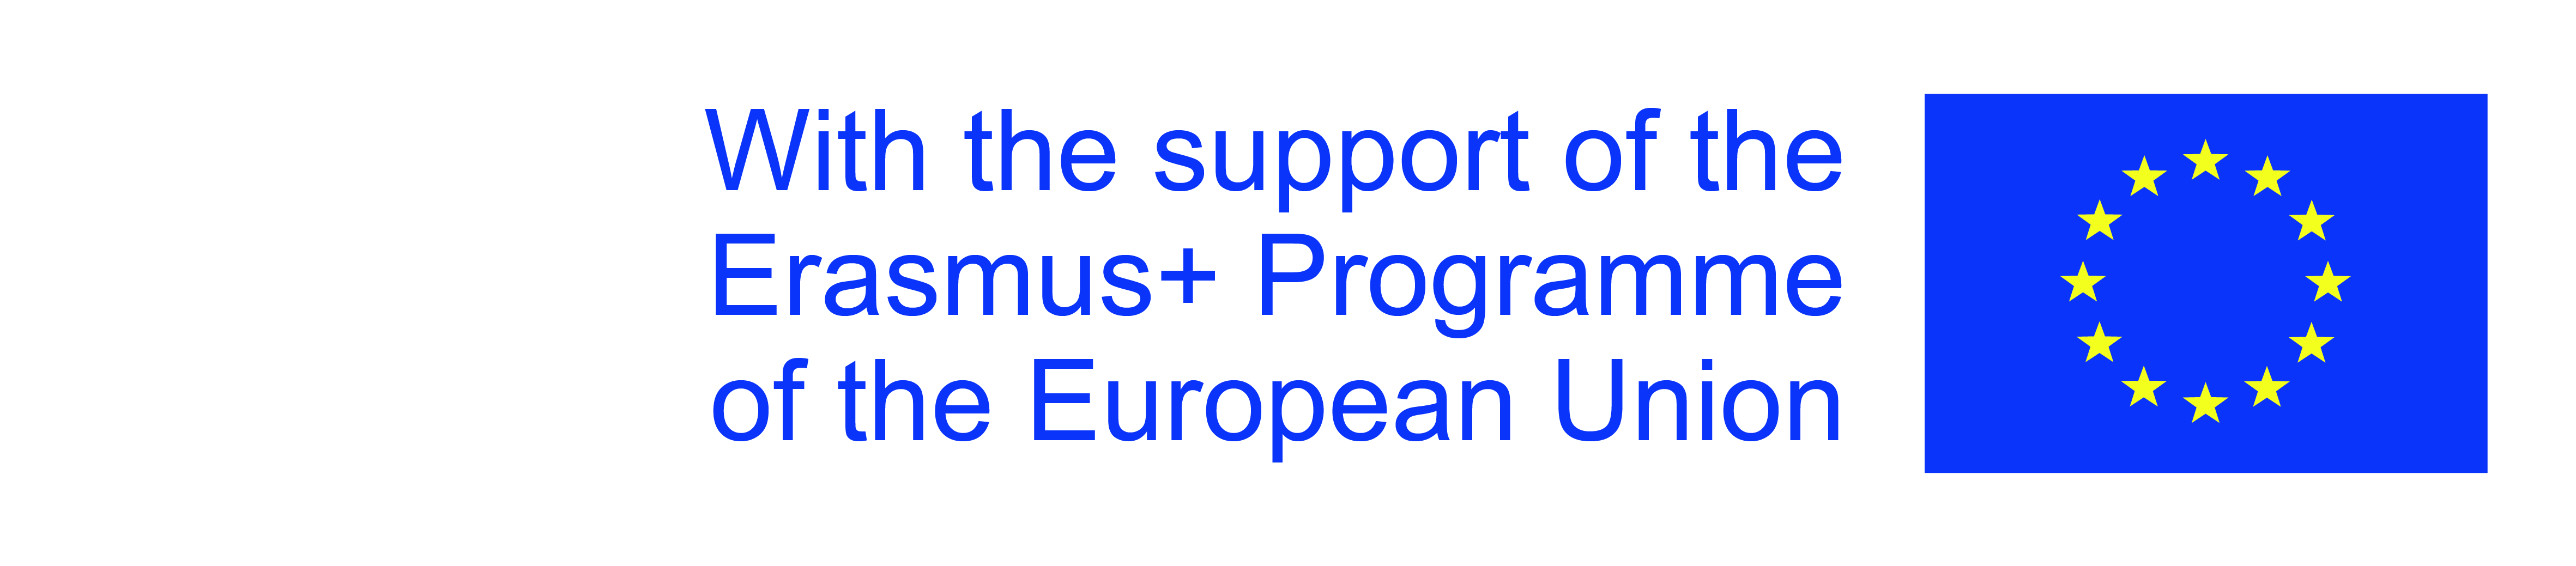 EU support